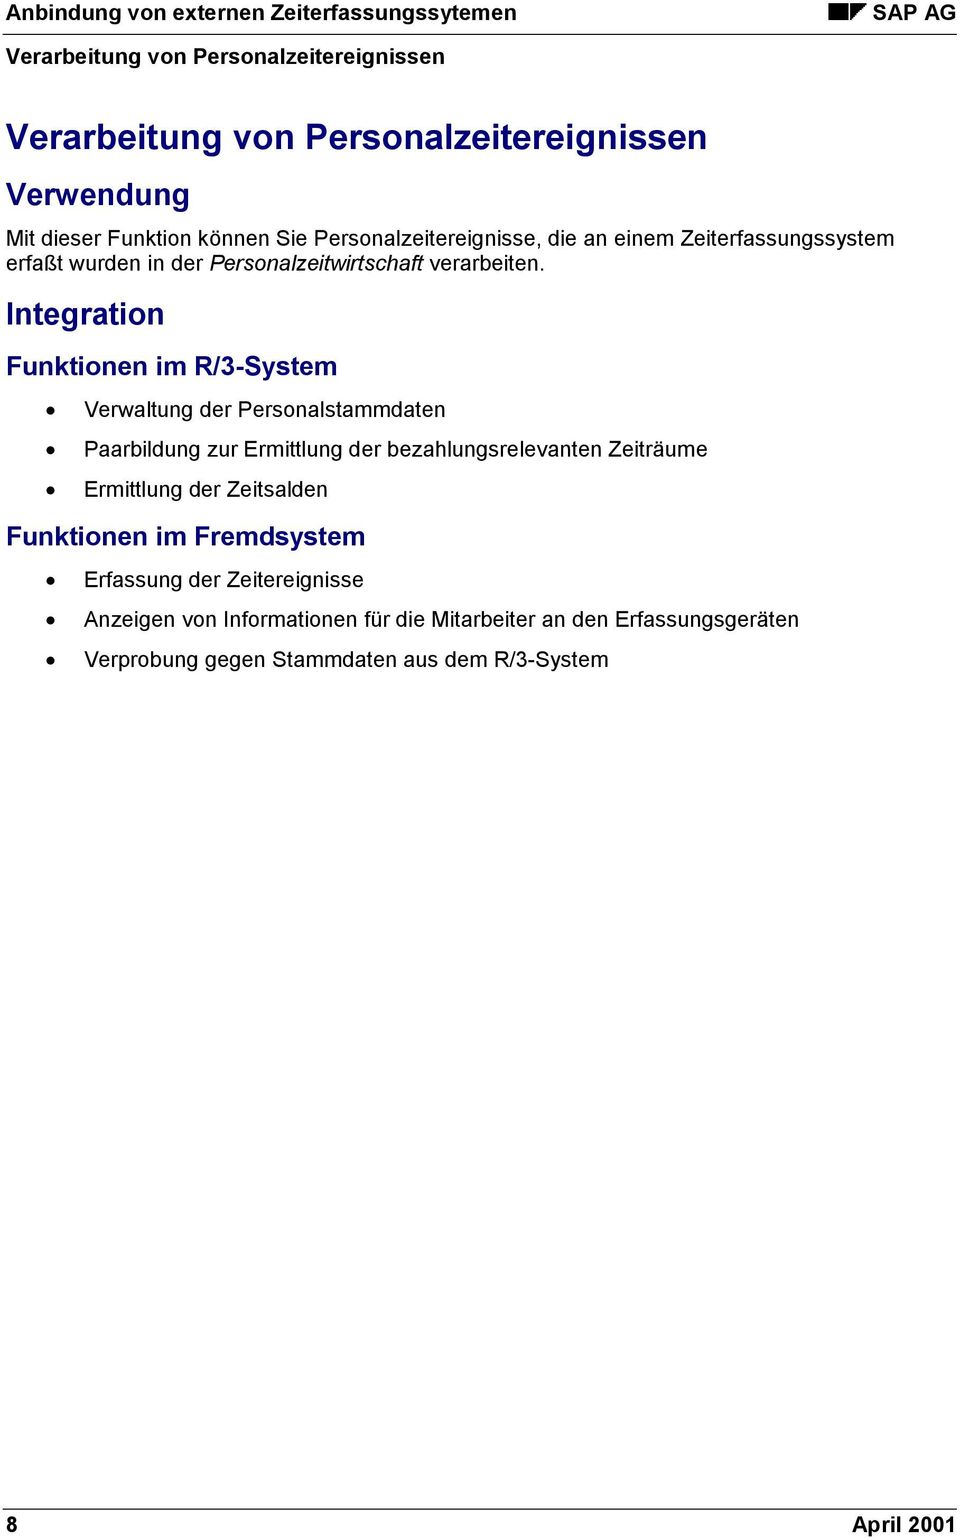 Integration Funktionen im R/3-System Verwaltung der Personalstammdaten Paarbildung zur Ermittlung der bezahlungsrelevanten Zeiträume Ermittlung der